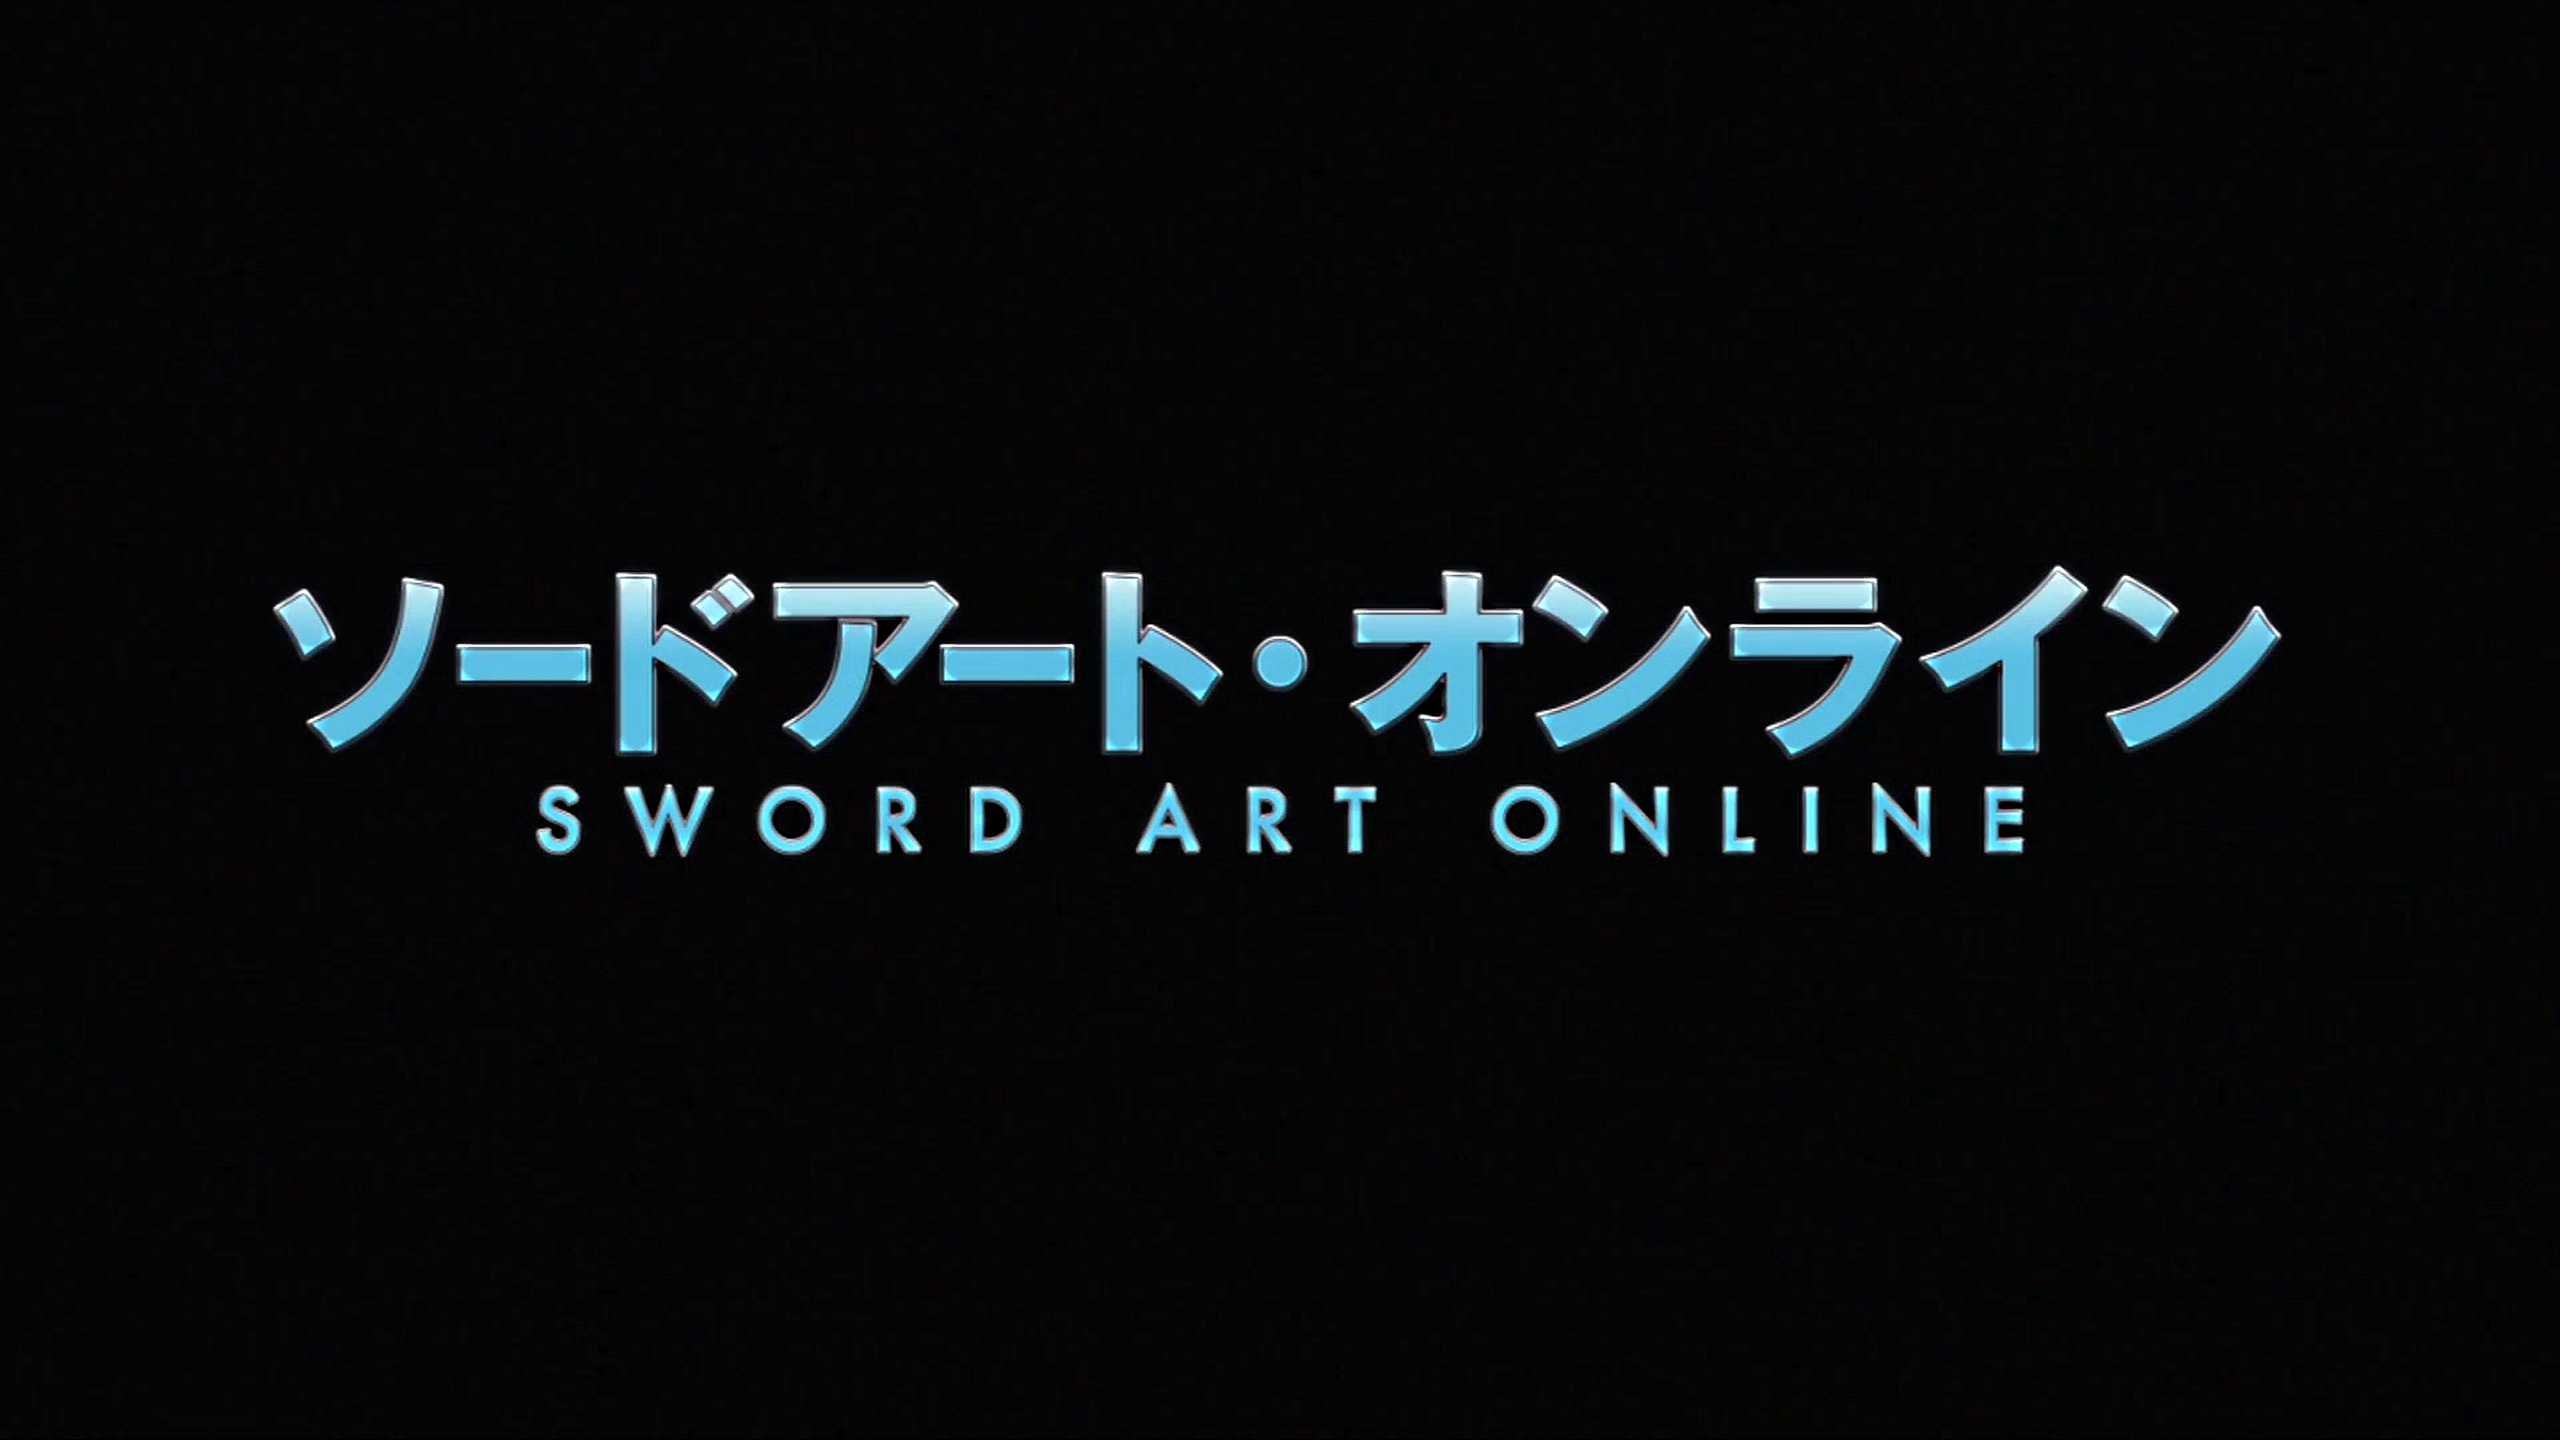 Sword Art Online Puter Wallpaper Desktop Background